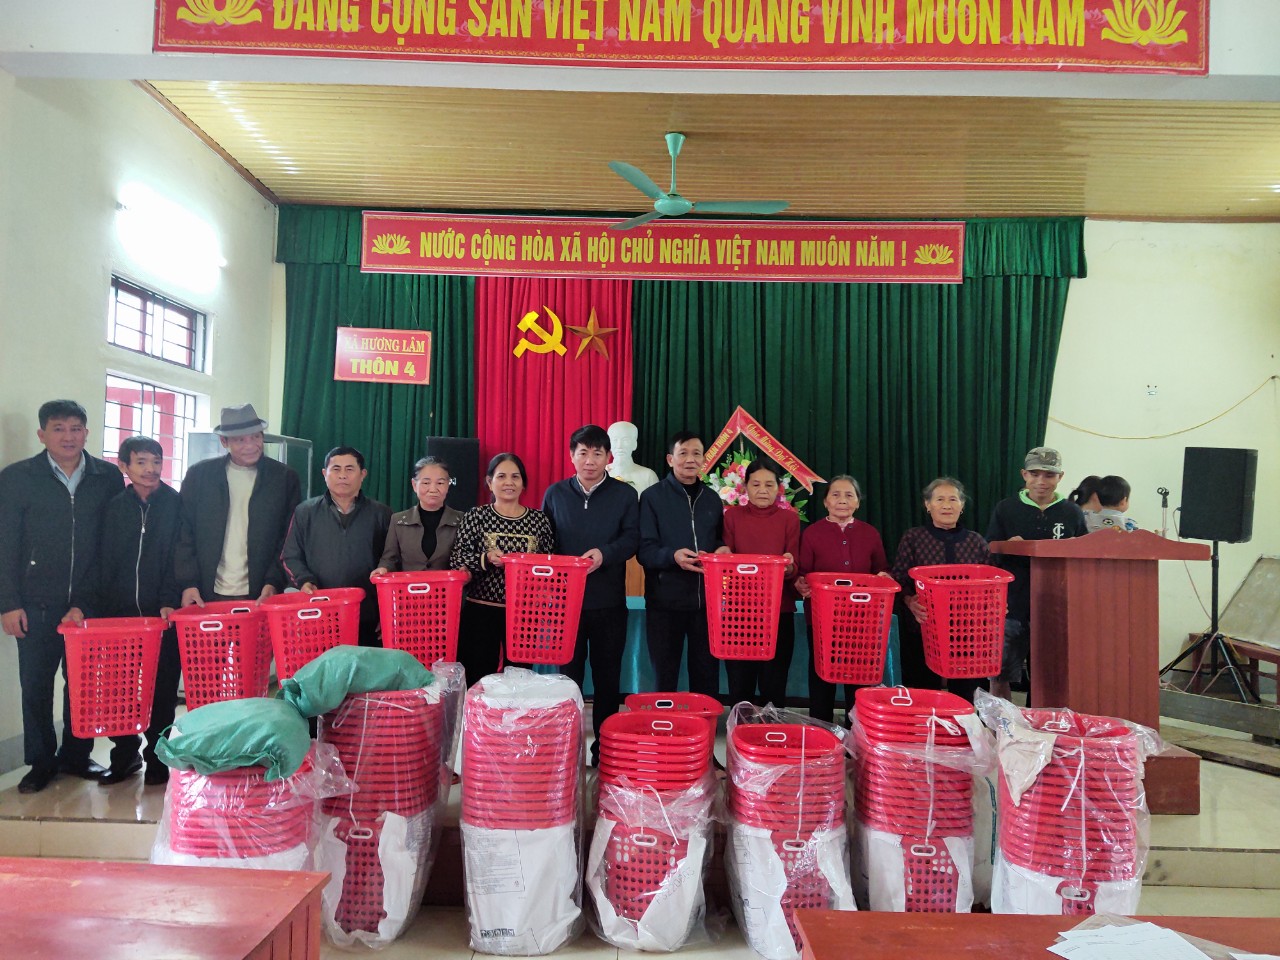 Hình ảnh trao giỏ rác và chế phẩm sinh học Hatimic tại xã Hương Lâm